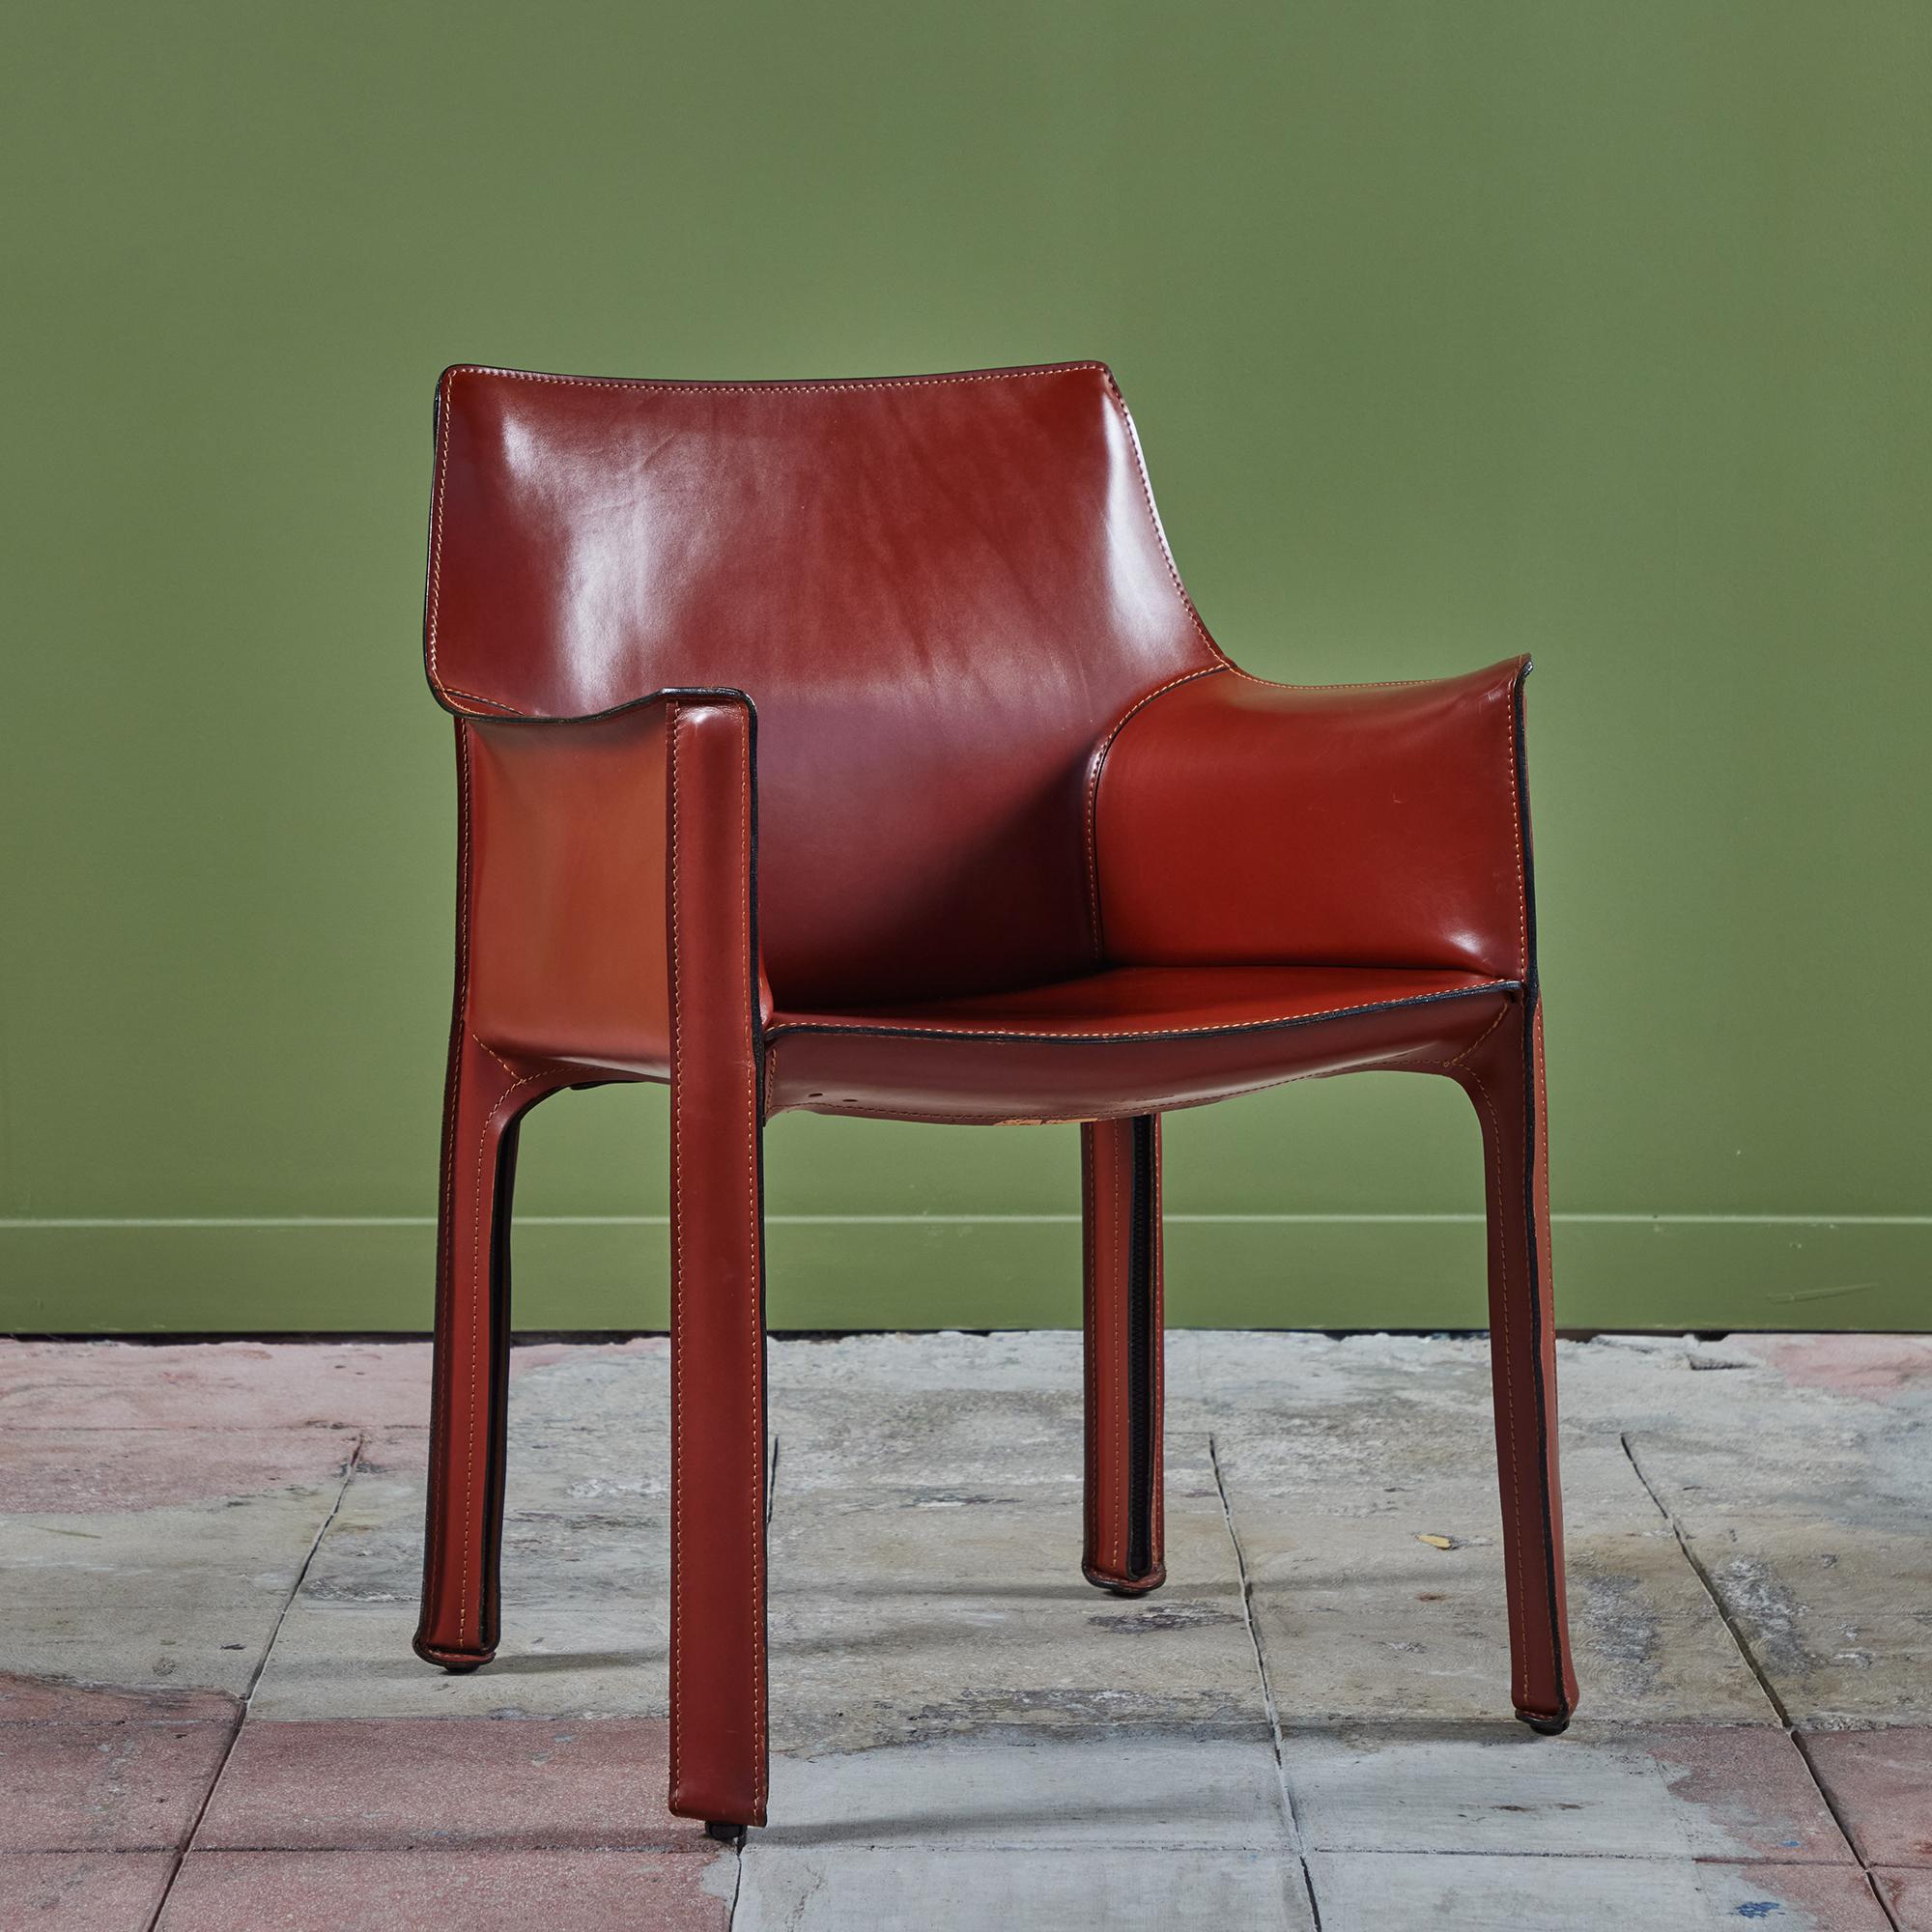 Dieser ikonische Stuhl wurde von Mario Bellini für Cassina in den 1970er Jahren in Italien entworfen. Er ist mit dem originalen tiefroten Sattelleder bezogen, das auf einem Stahlrahmen liegt. Die hinteren Beine sind mit einem schwarzen